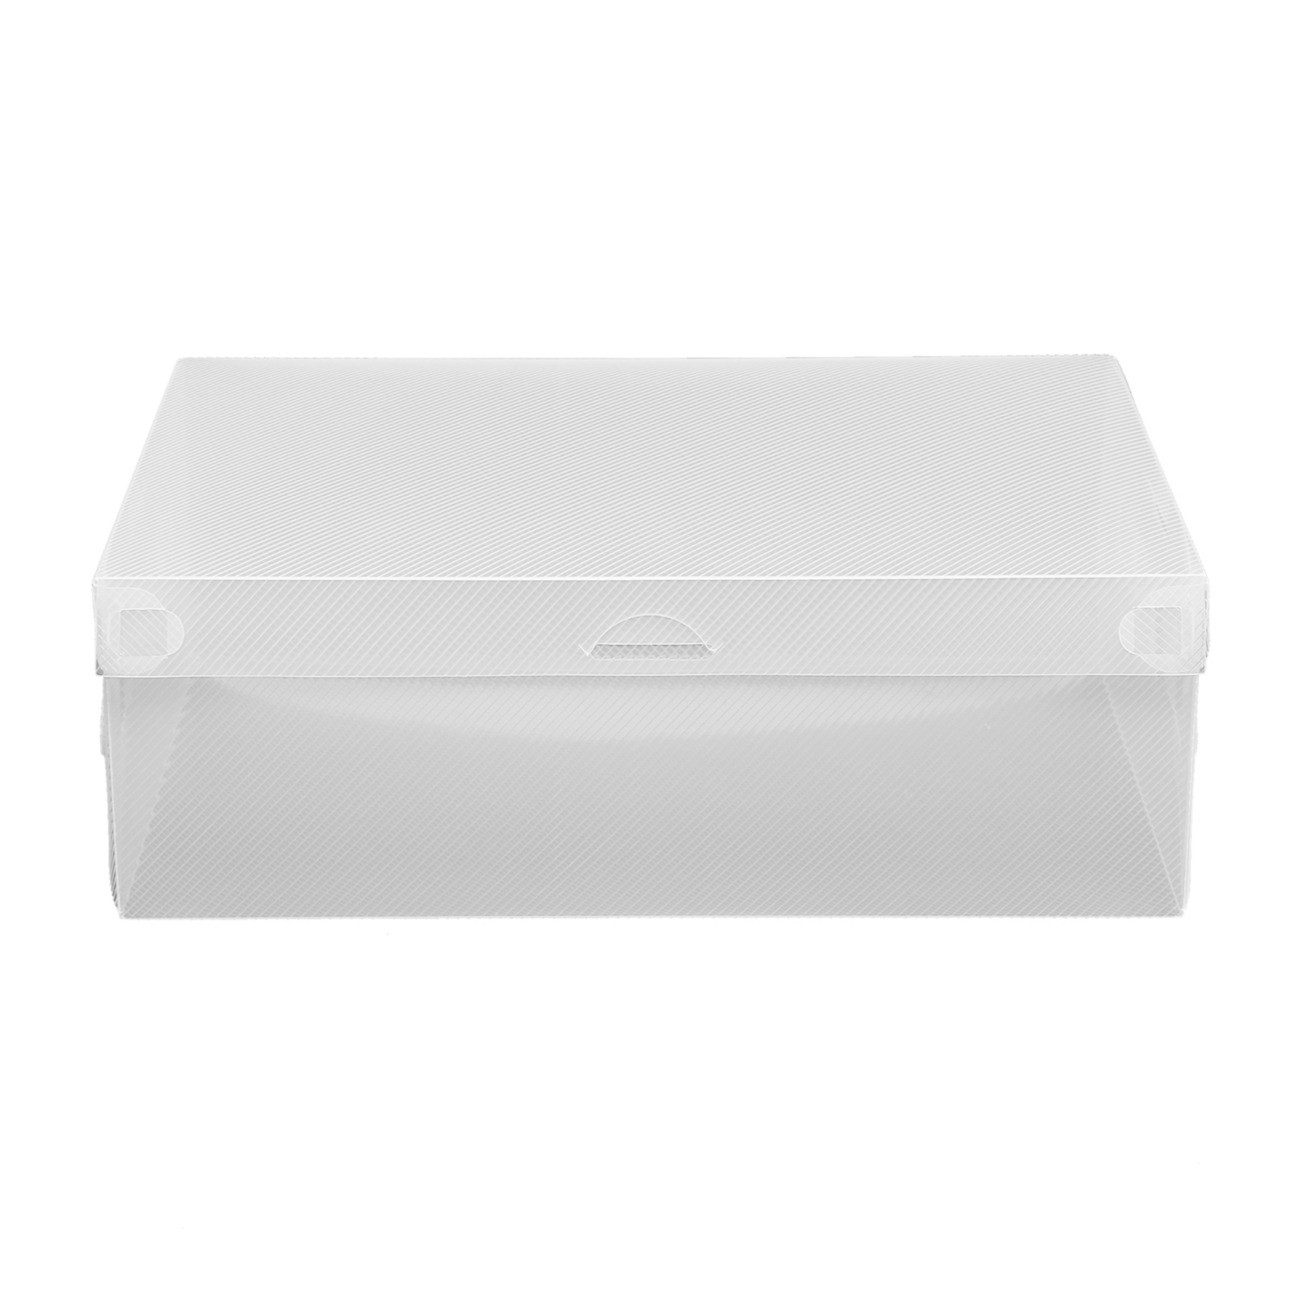 EBUY Schuhbox 20-teilige, stapelbare, durchsichtige Schuhkartons (20 St)